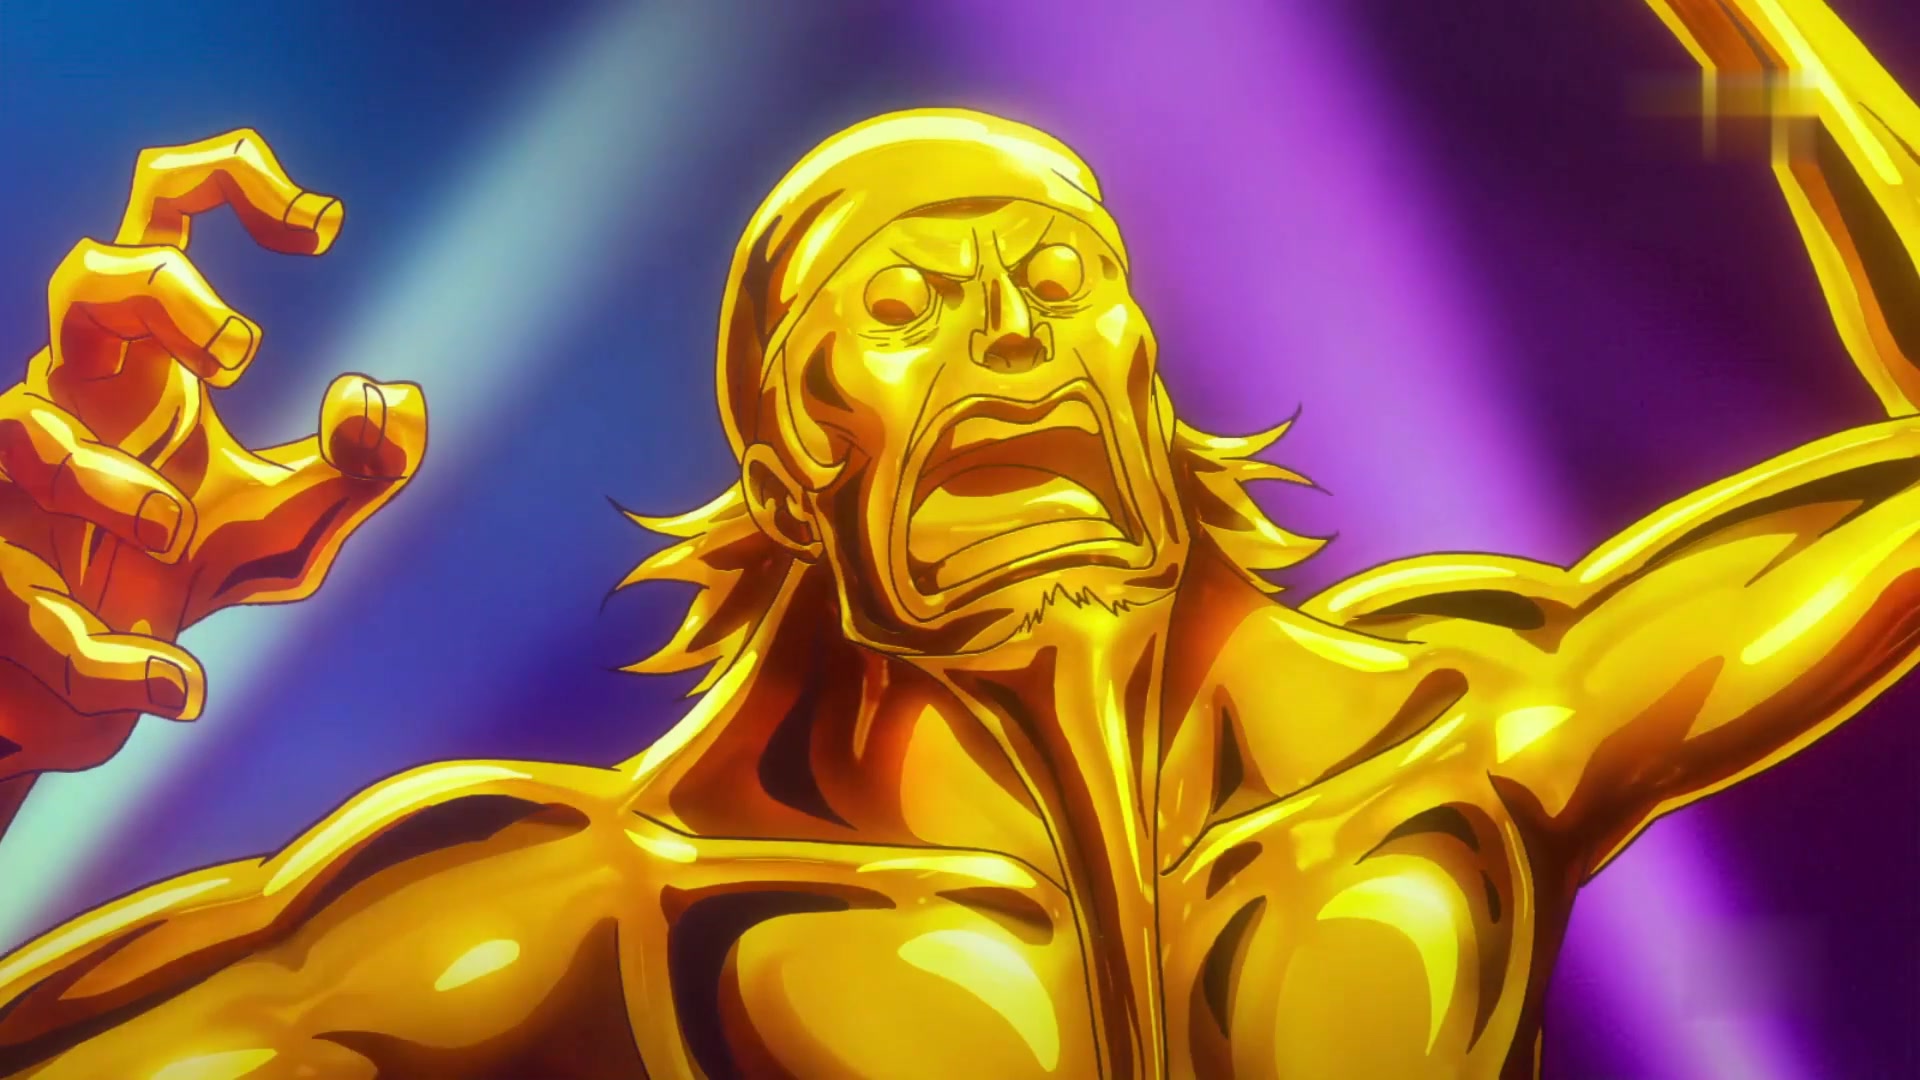 海贼王:金金果实能力者使用能力,把手下变成了一个黄金